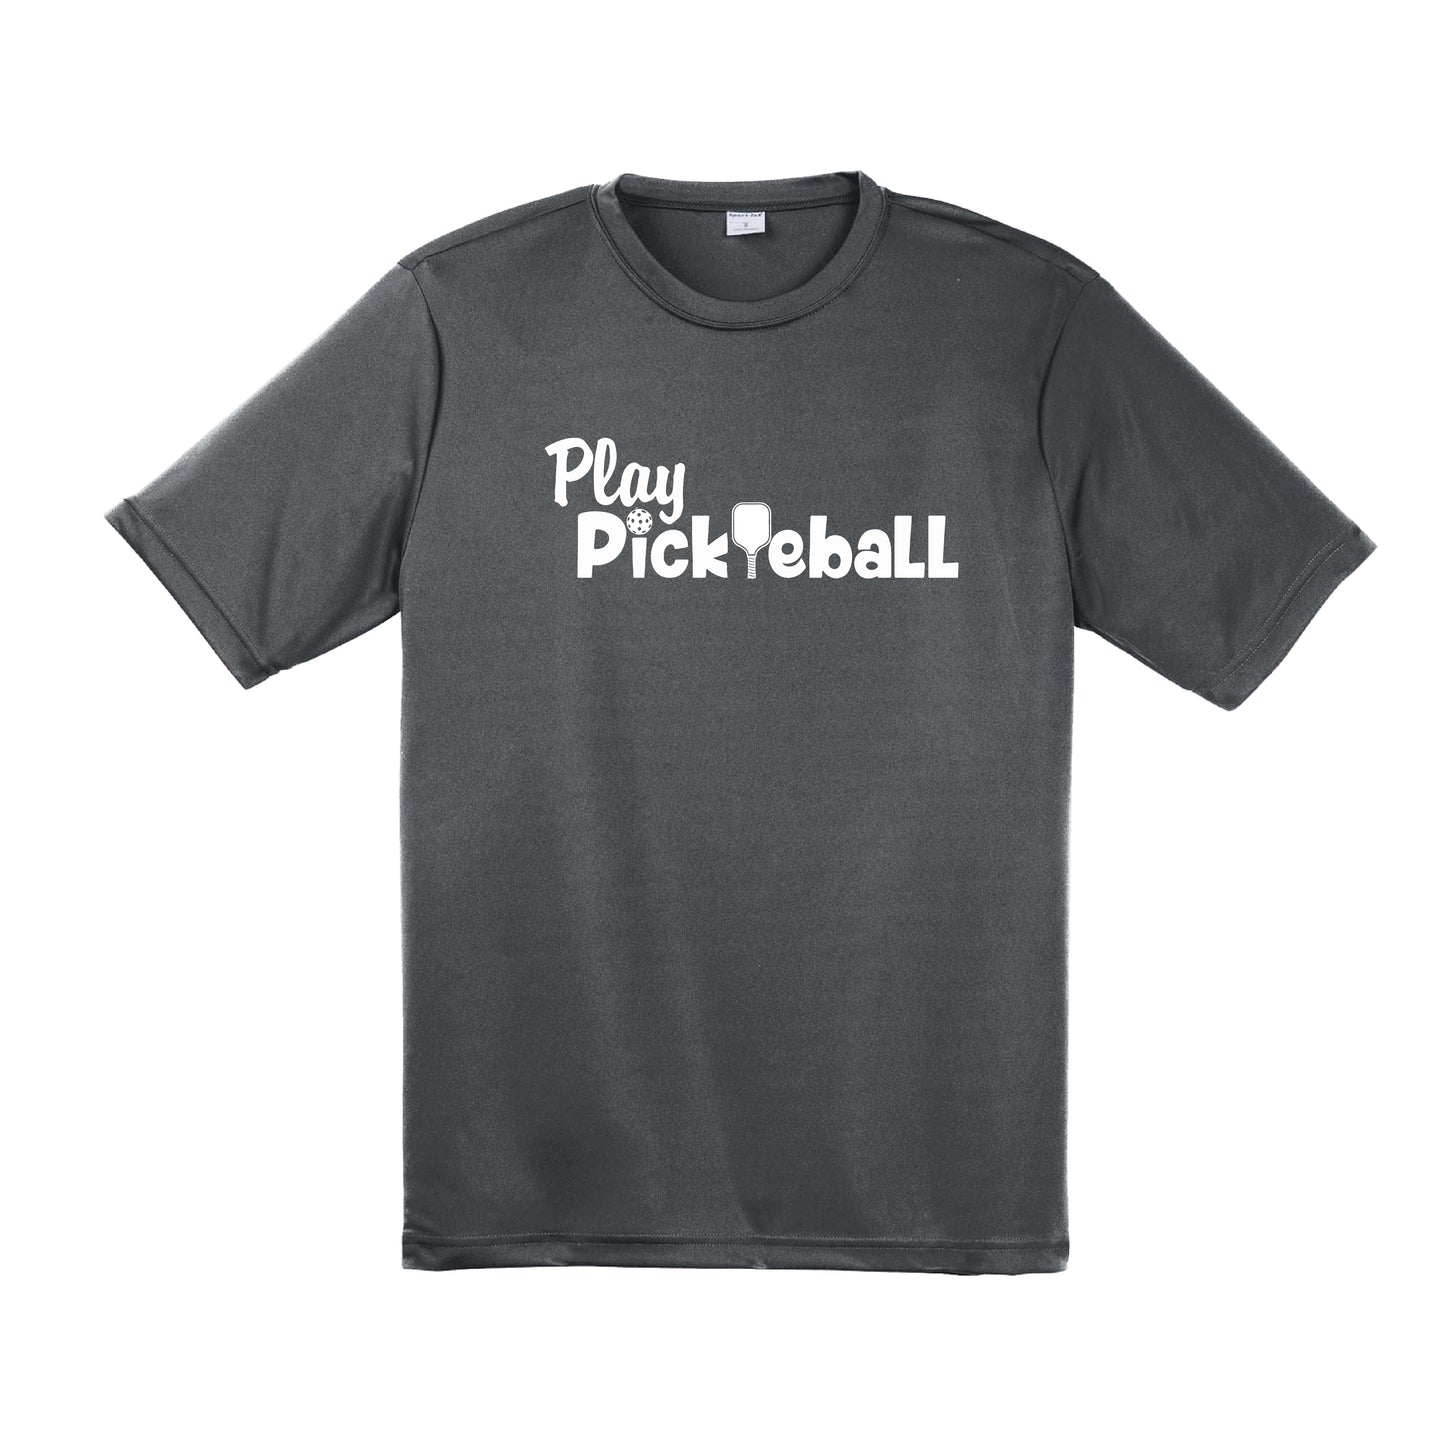 Play Pickleball | Men's Short Sleeve Pickleball Shirt | 100% Polyester